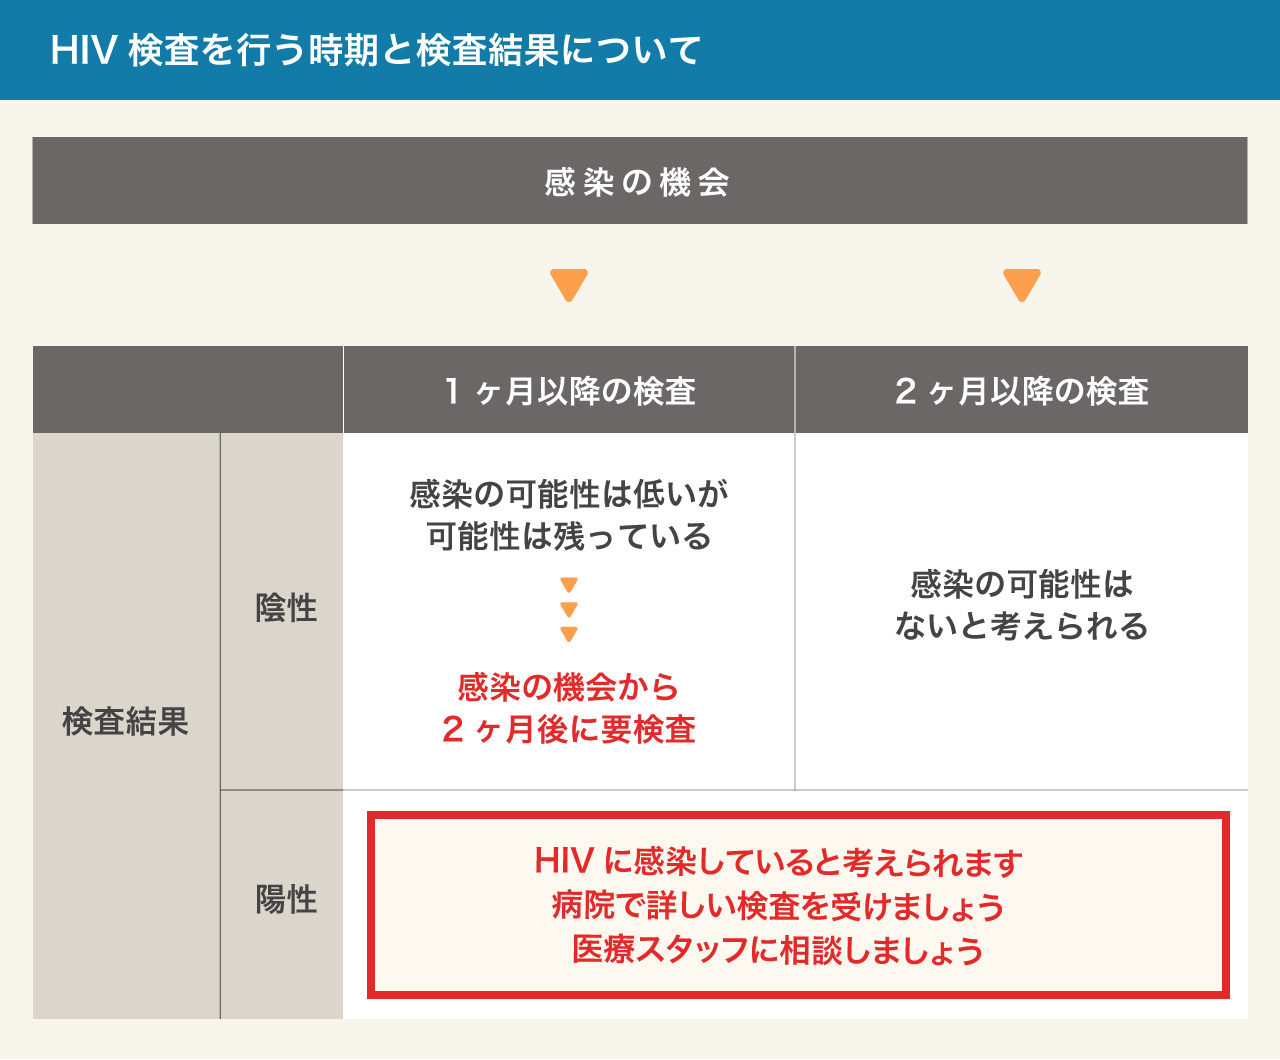 検査について 一般の皆さまへ 北海道hiv Aids情報 北海道大学病院hiv診療支援センター